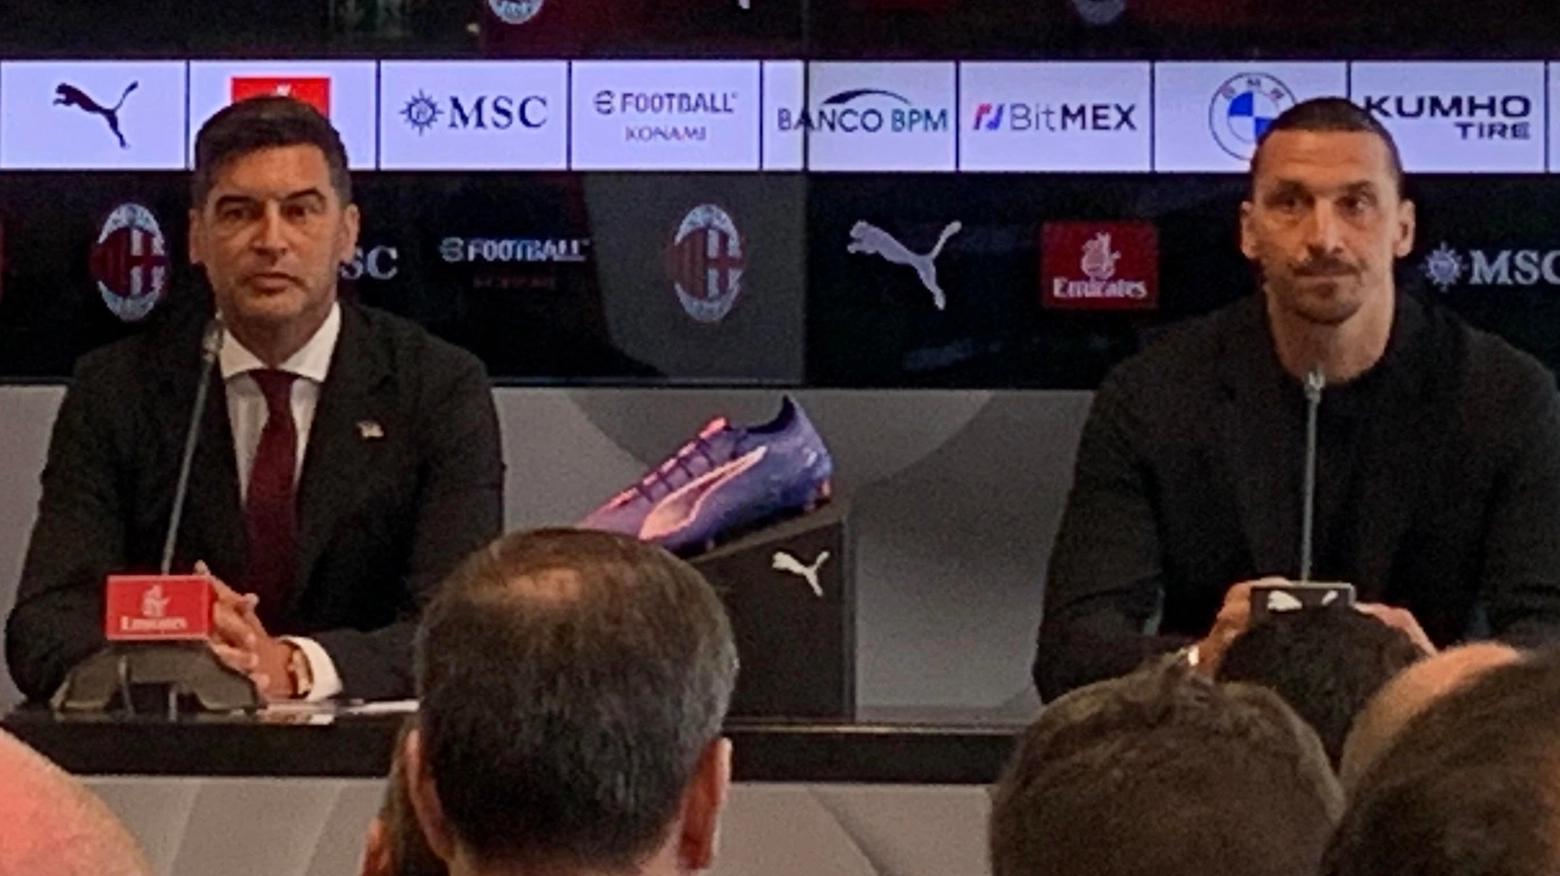 Il nuovo allenatore rossonero presentato a Casa Milan: “Ibrahimovic mi ha mostrato la sala trofei e mi ha detto che c'è ancora spazio...”